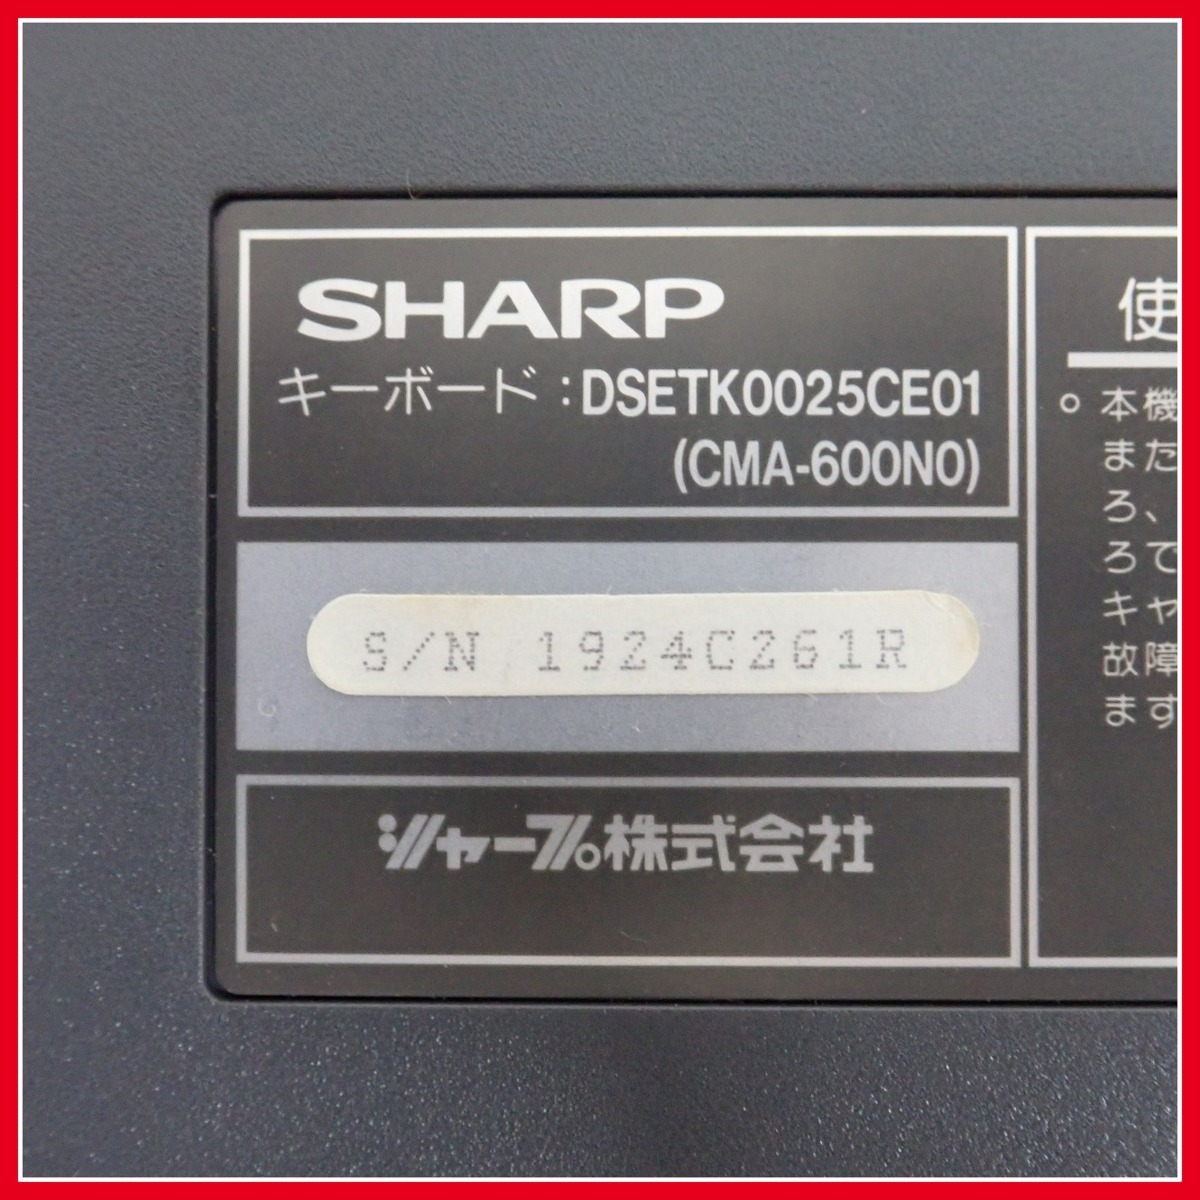 ◇SHARP X68000用キーボード CMA-600N0/DSETK0025CE01 2台セット シャープ レトロPC 周辺機器 ジャンク【20_画像4